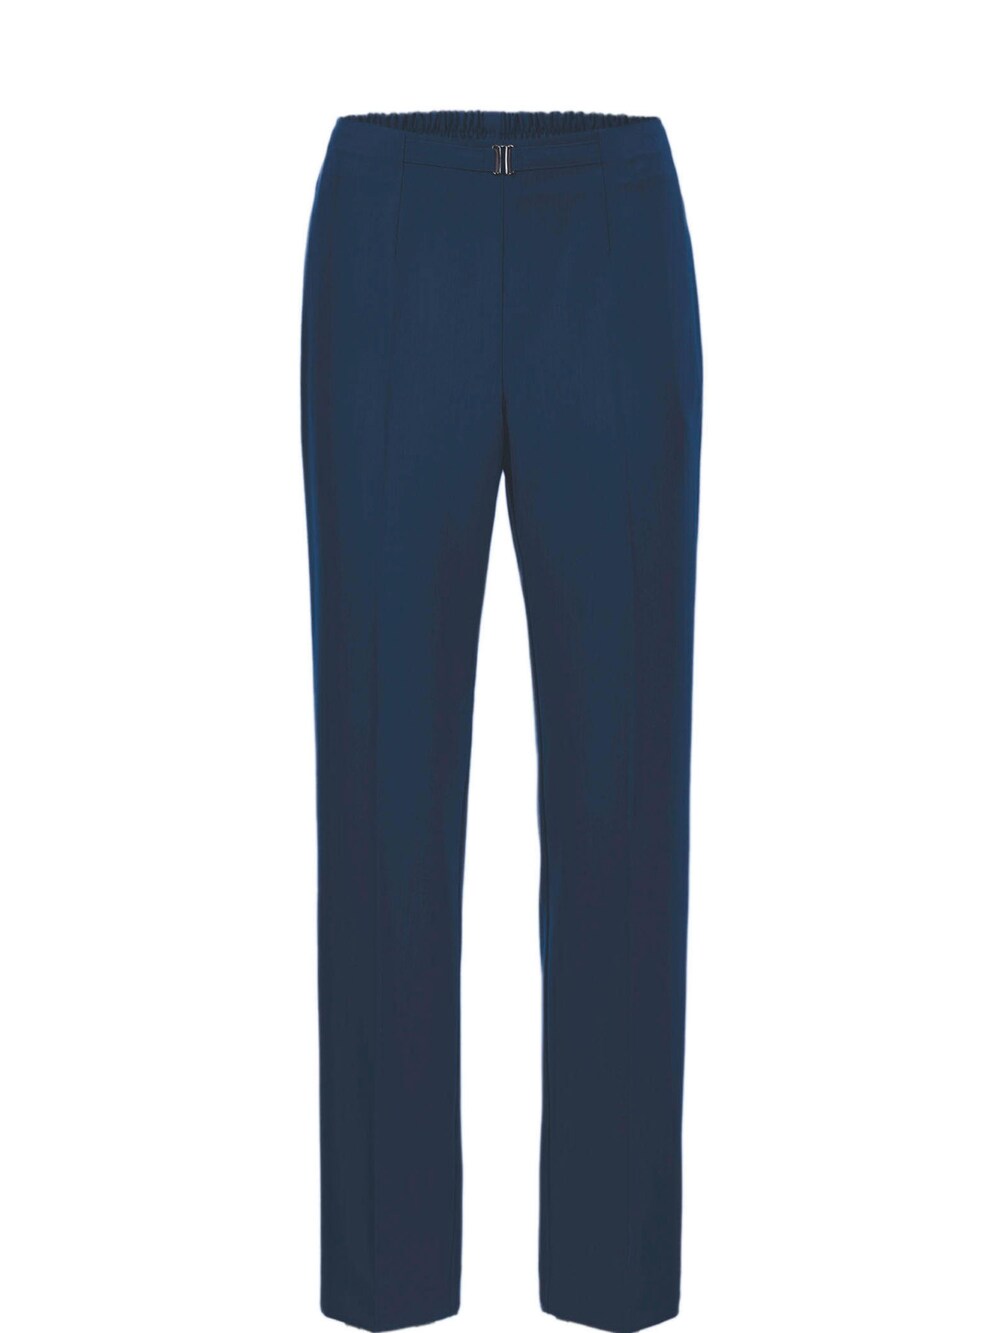 Обычные плиссированные брюки Goldner Martha, синий обычные брюки goldner морской синий